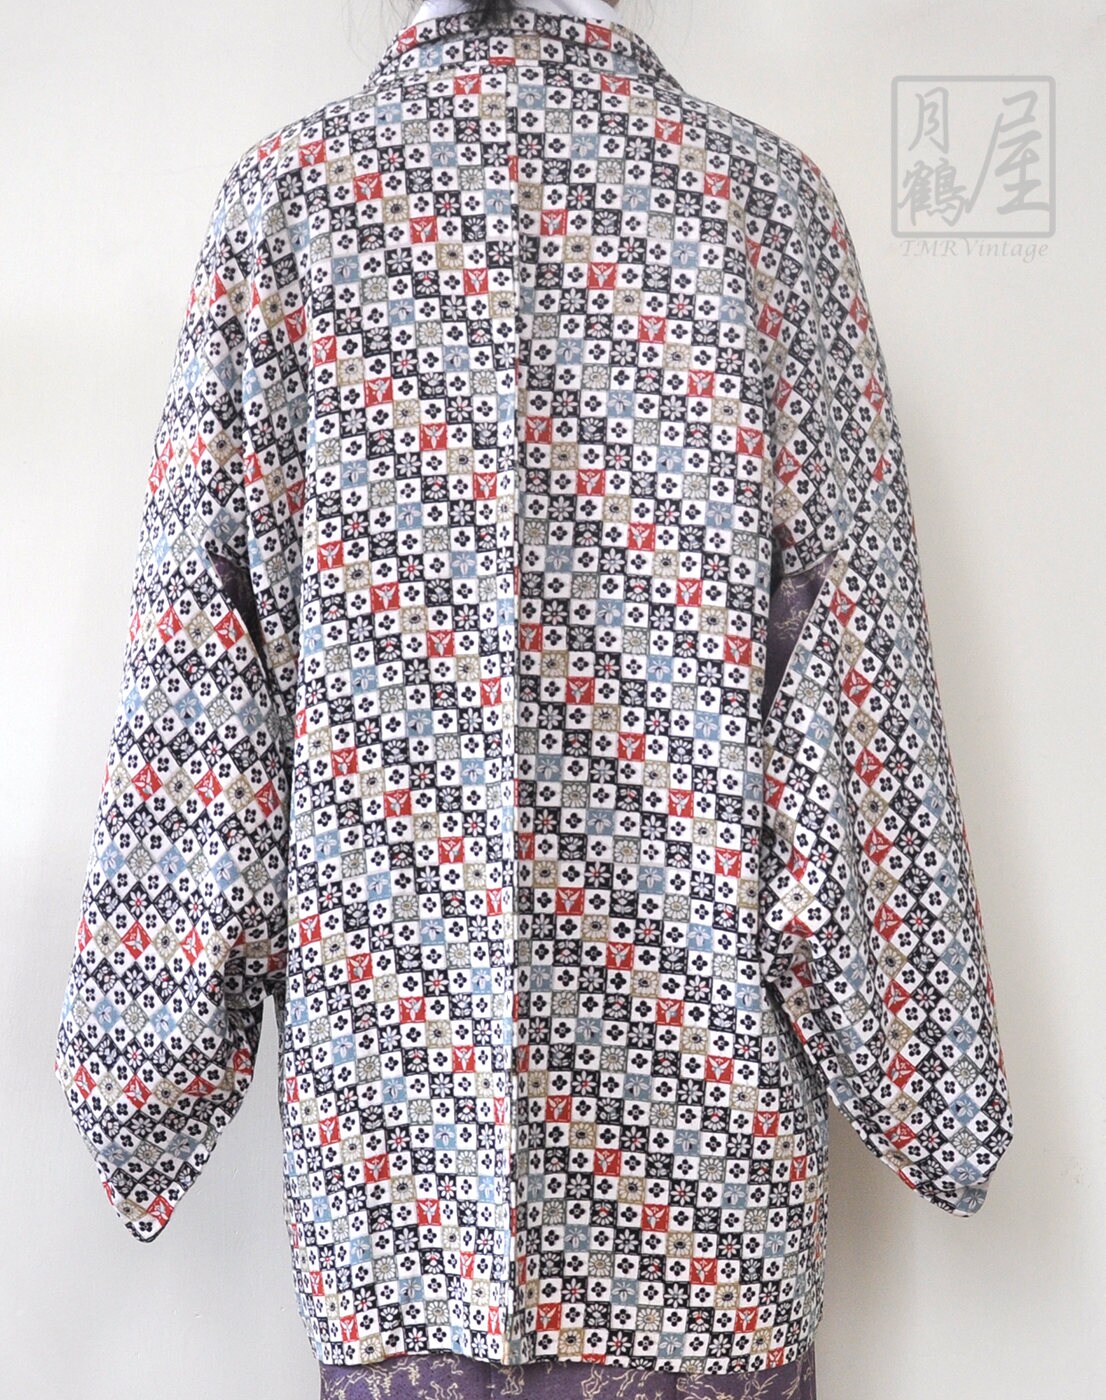 Check Kimono Jacket/japanese Haori Short Kimono Robe Gown | Etsy